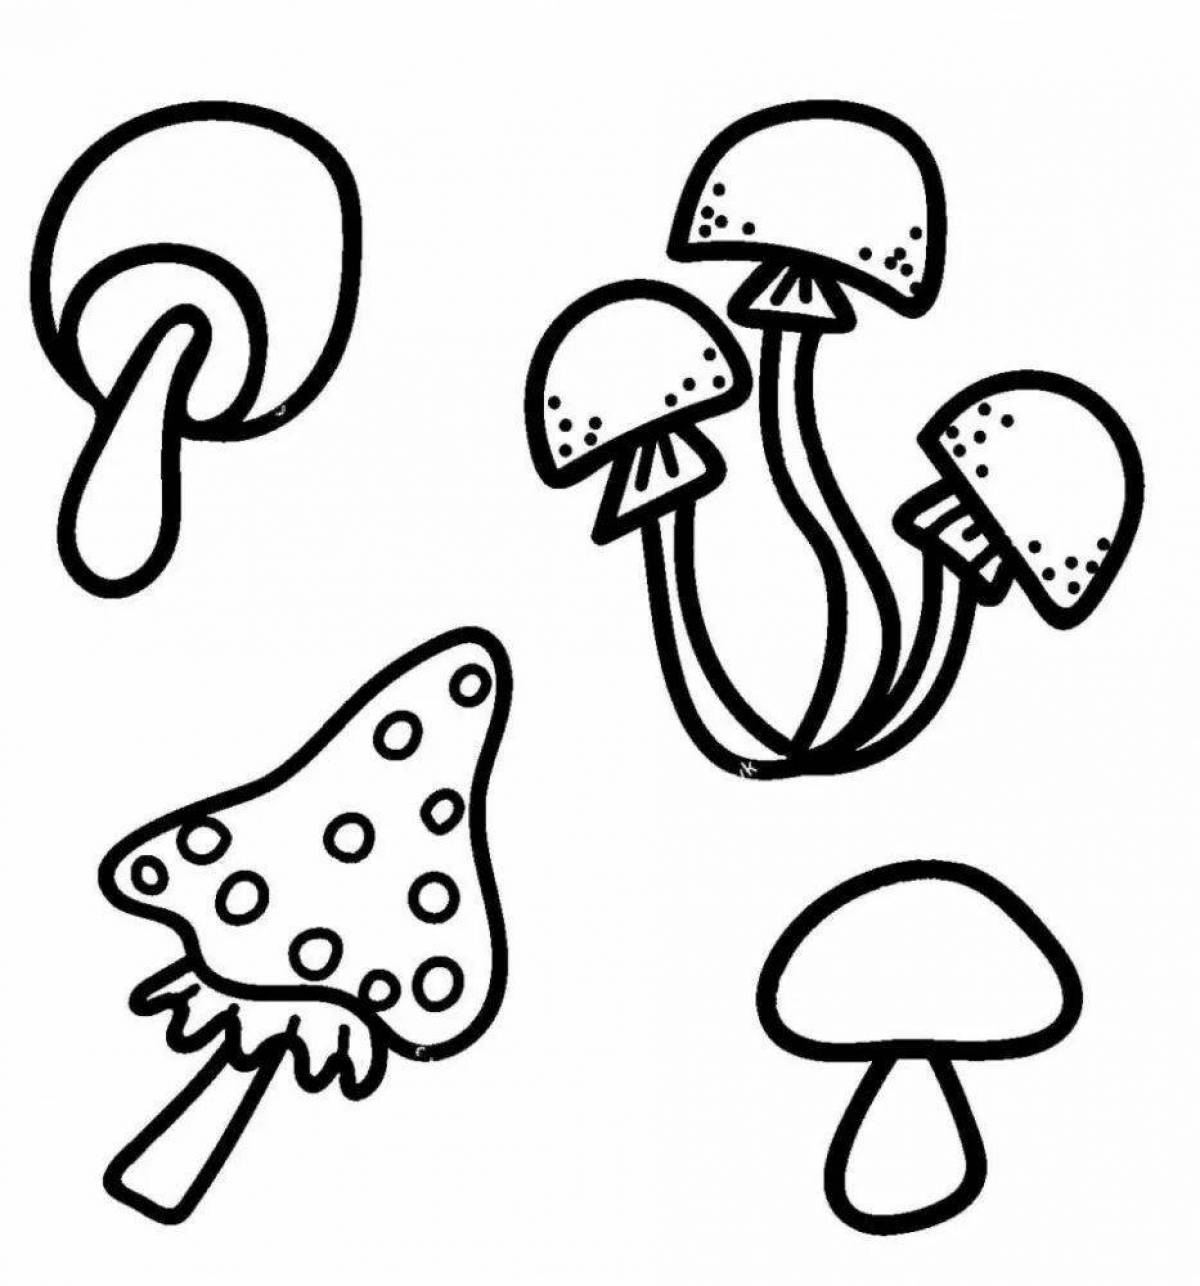 Tempting inedible mushrooms